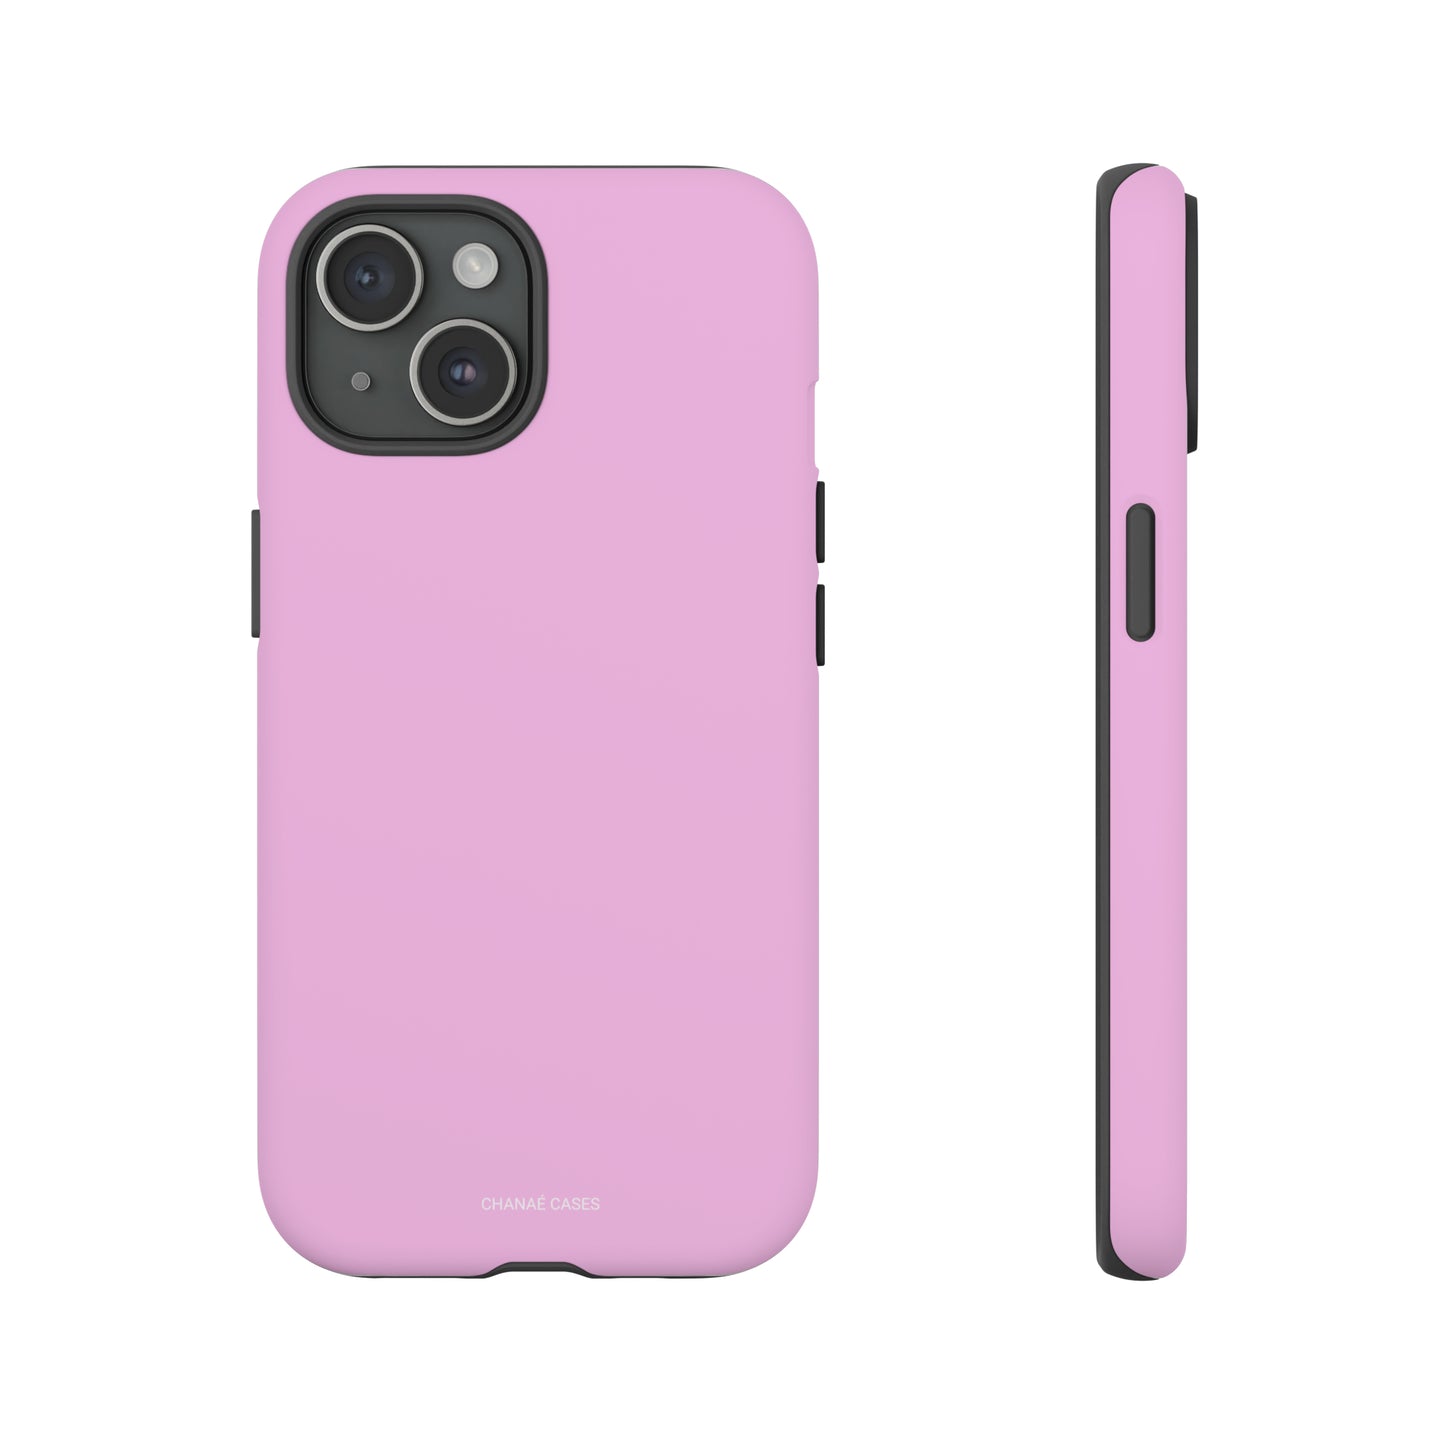 Make Me Blush iPhone "Tough" Case (Pink)